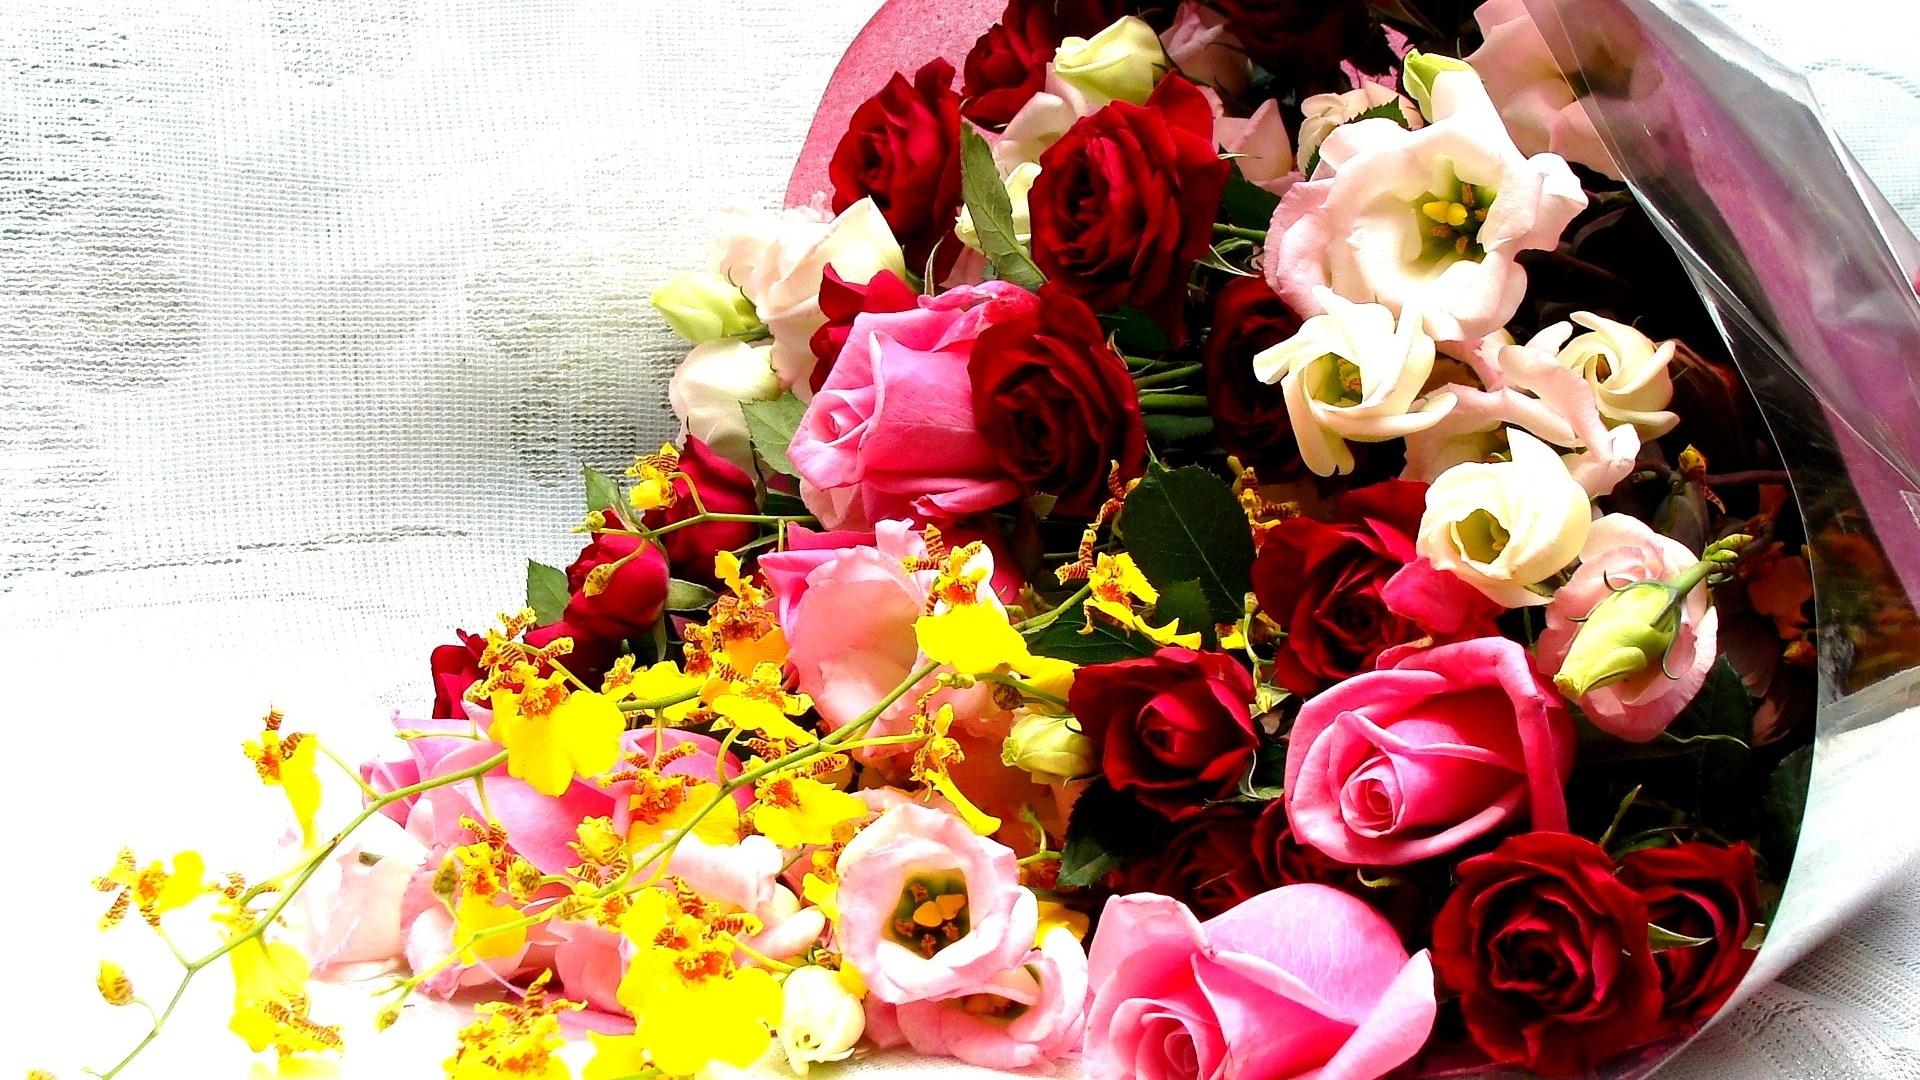 Special Flower Bouquet Wallpaper